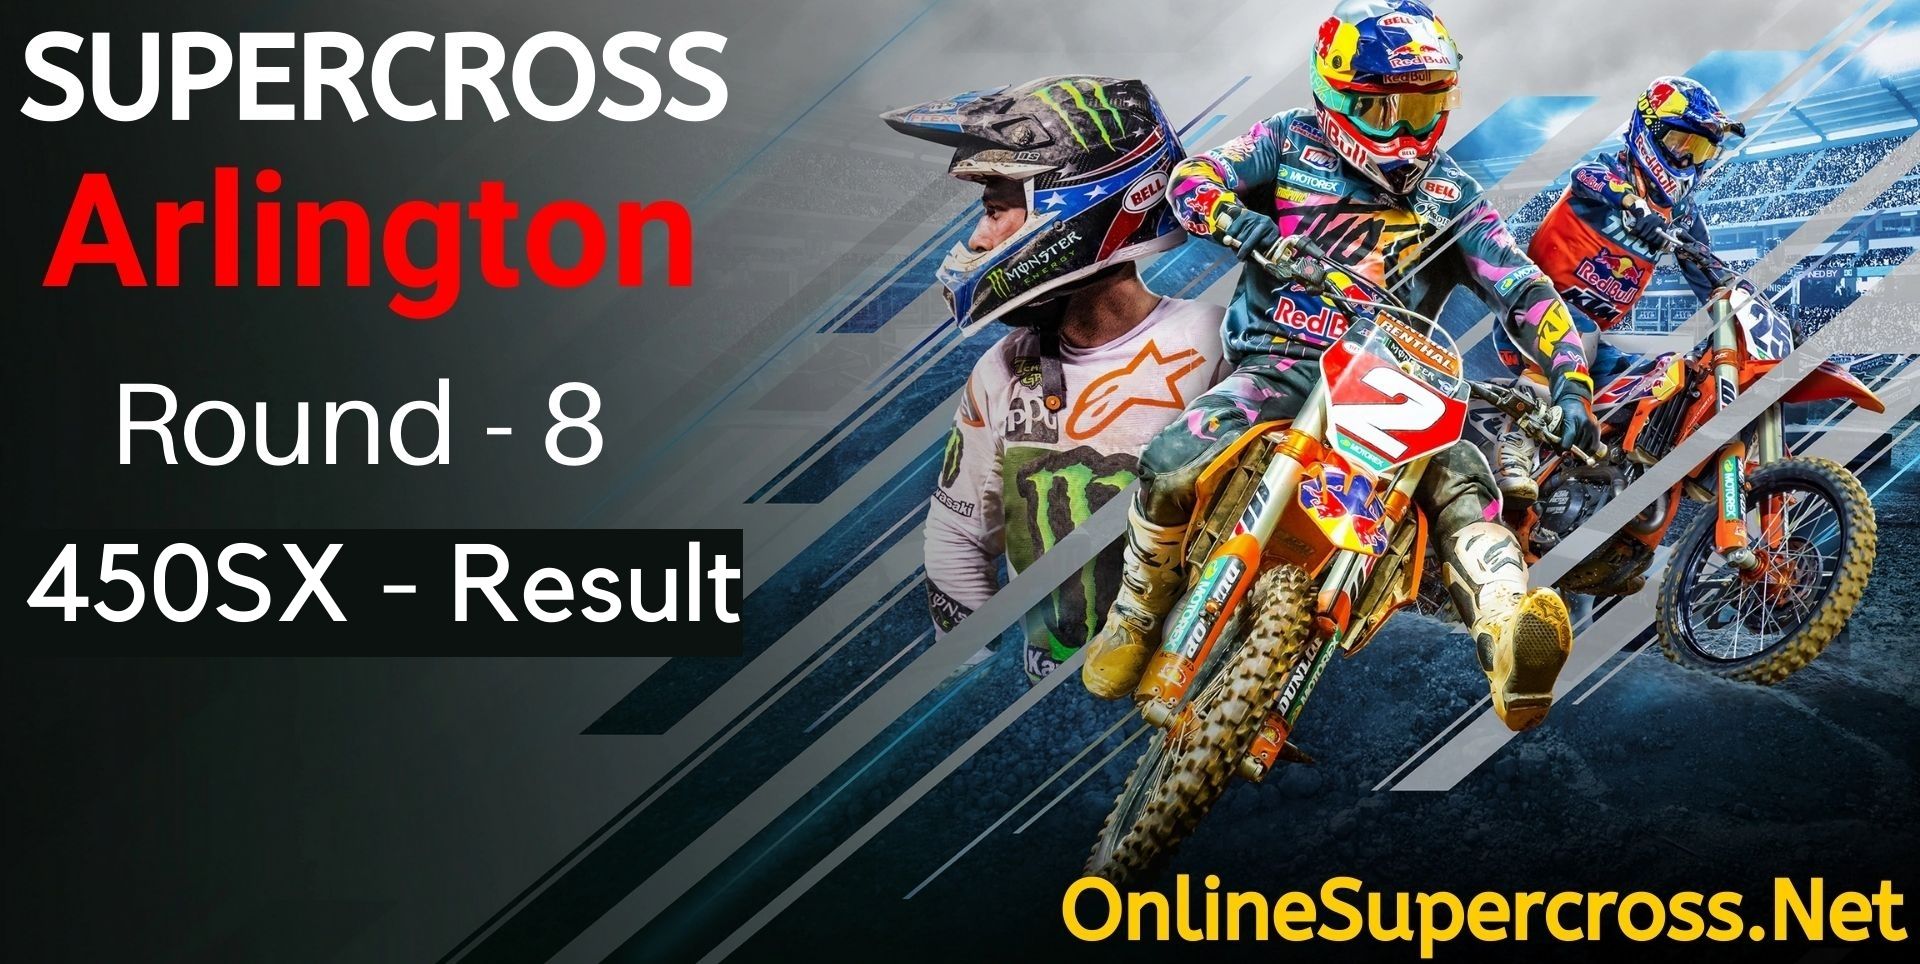 Arlington Round 8 Supercross 450SX Result 2022